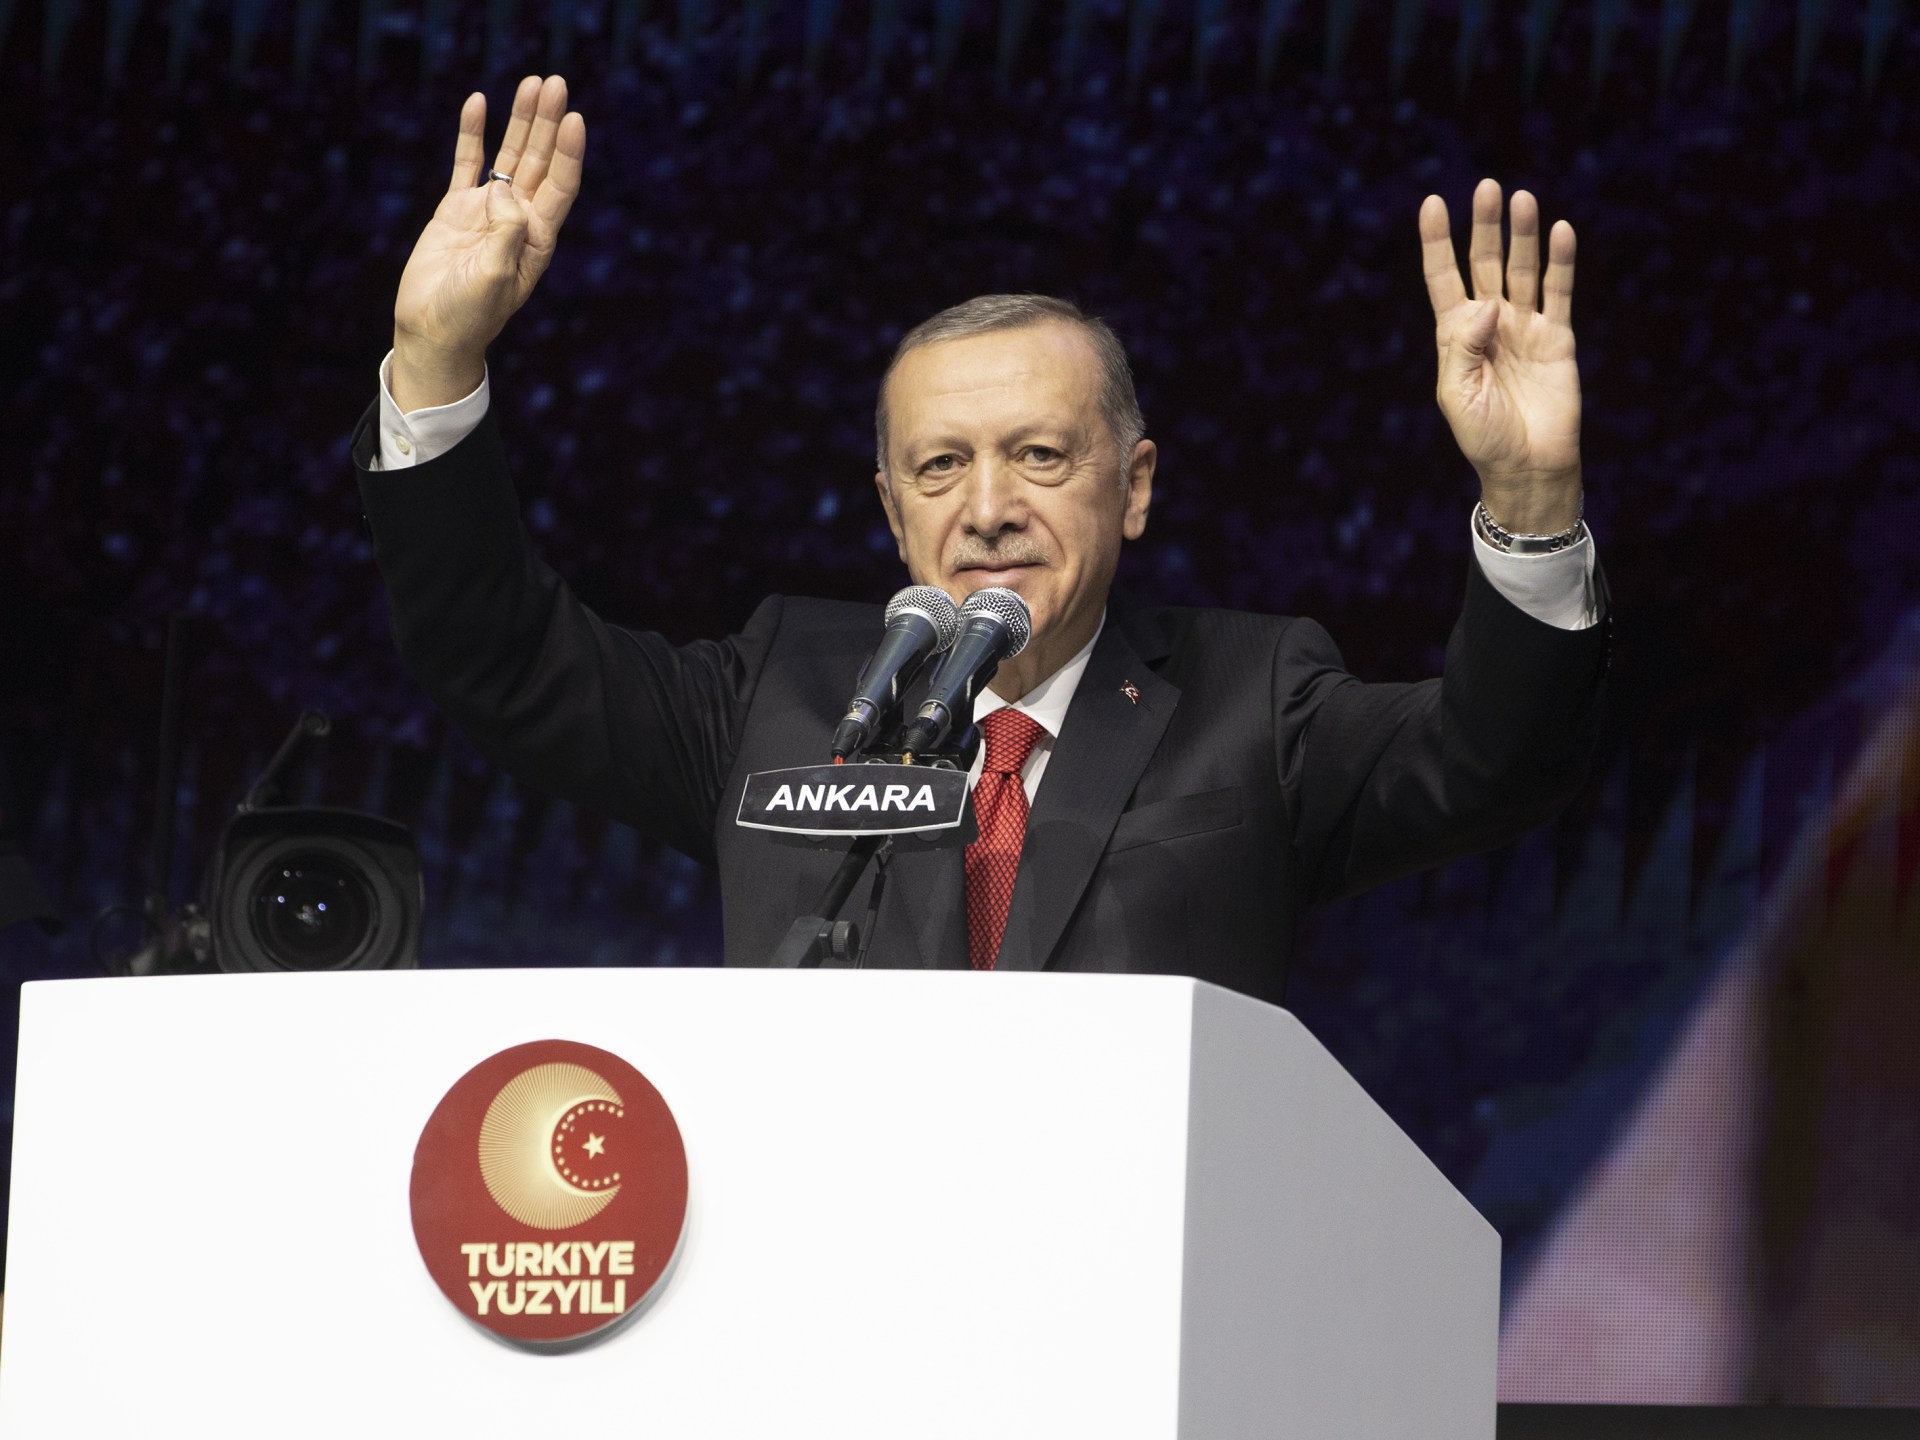 الحب والحرية والتجارة والتعليم.. أردوغان يستعرض رؤية تركيا في الـ100 عام المقبلة